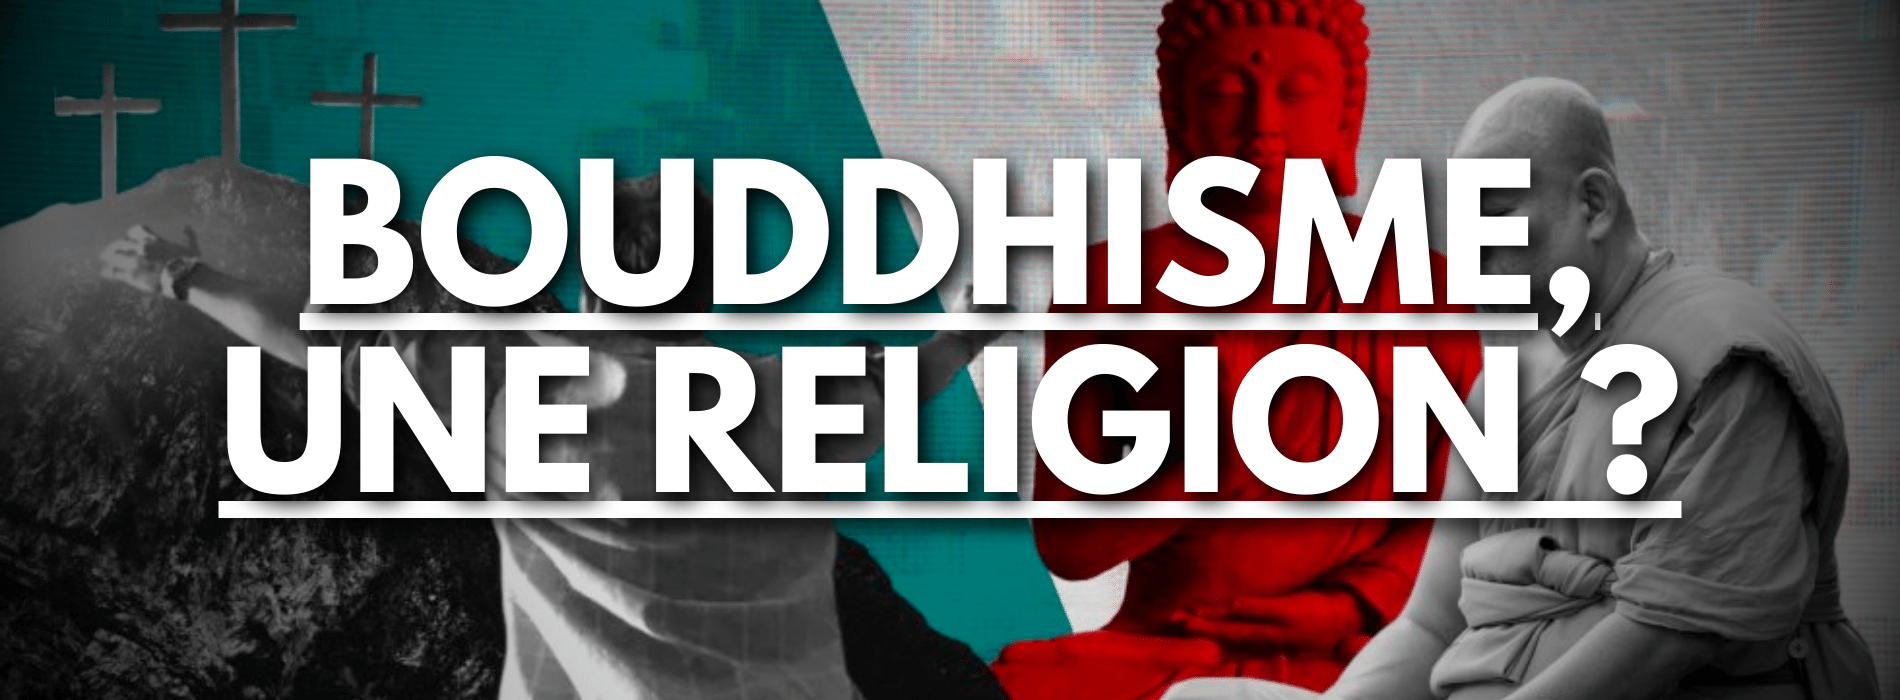 est-ce-que-le-bouddhisme-est-une-religion